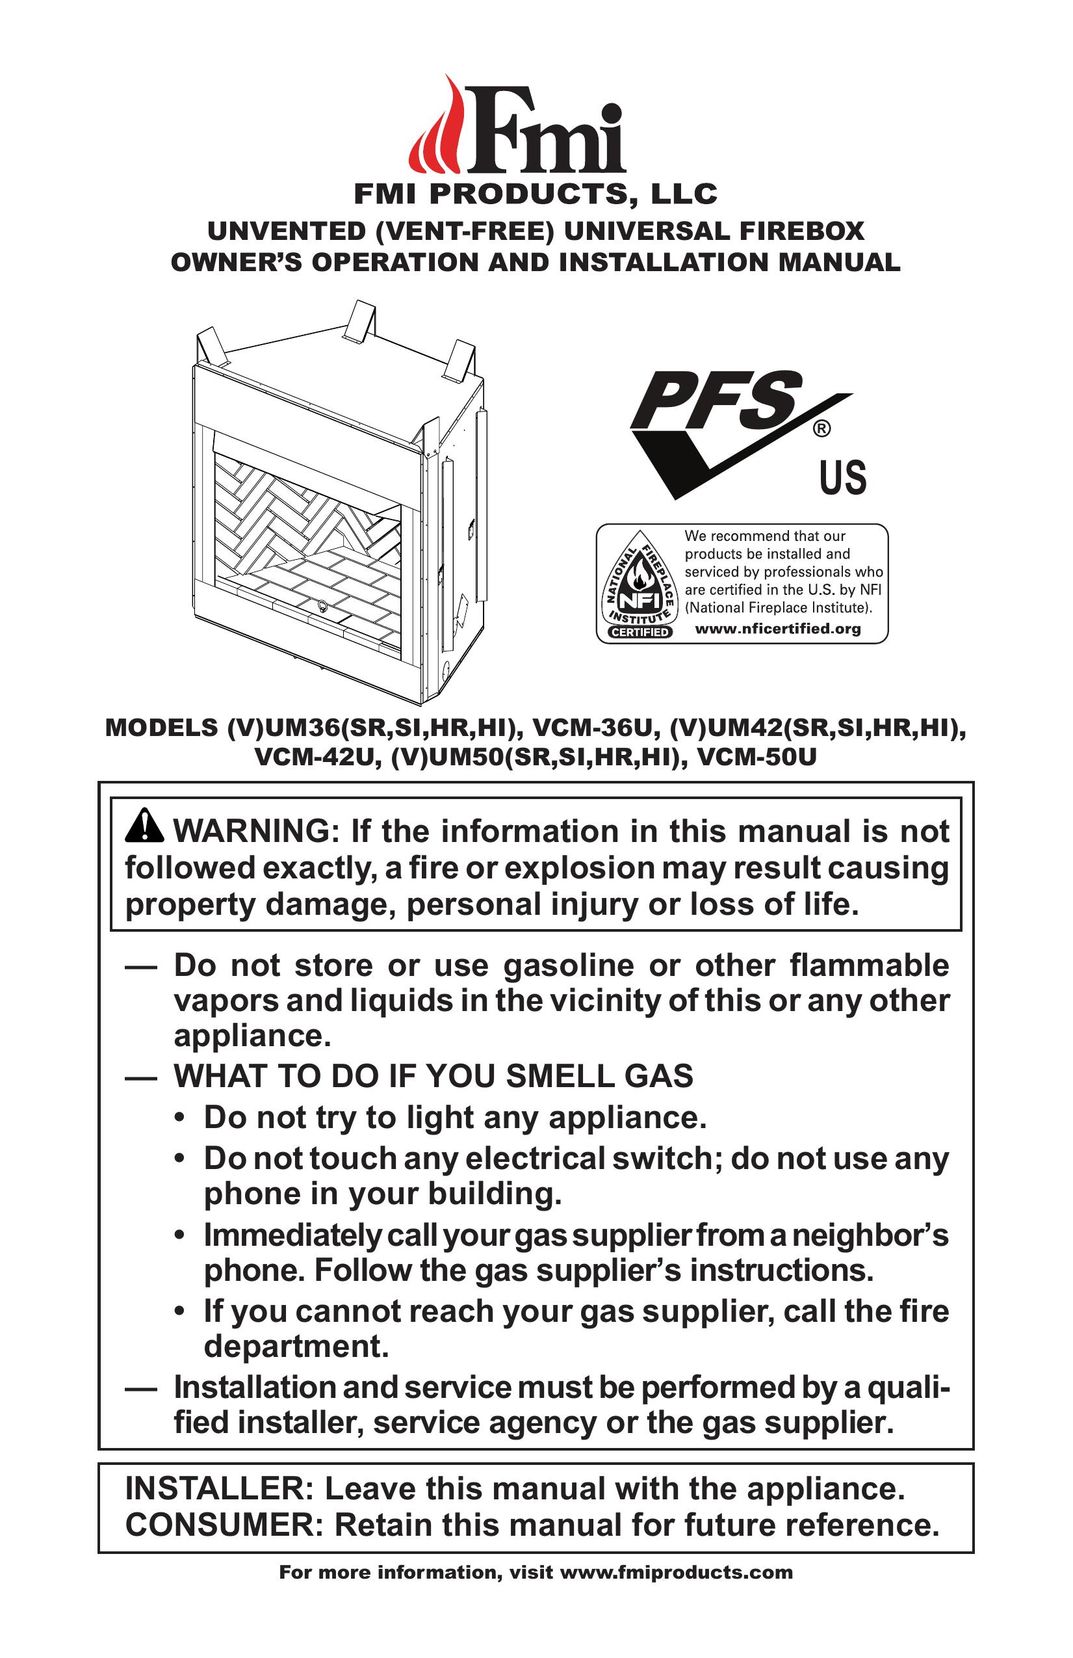 FMI (V)UM42(SR,SI,HR,HI) Indoor Fireplace User Manual